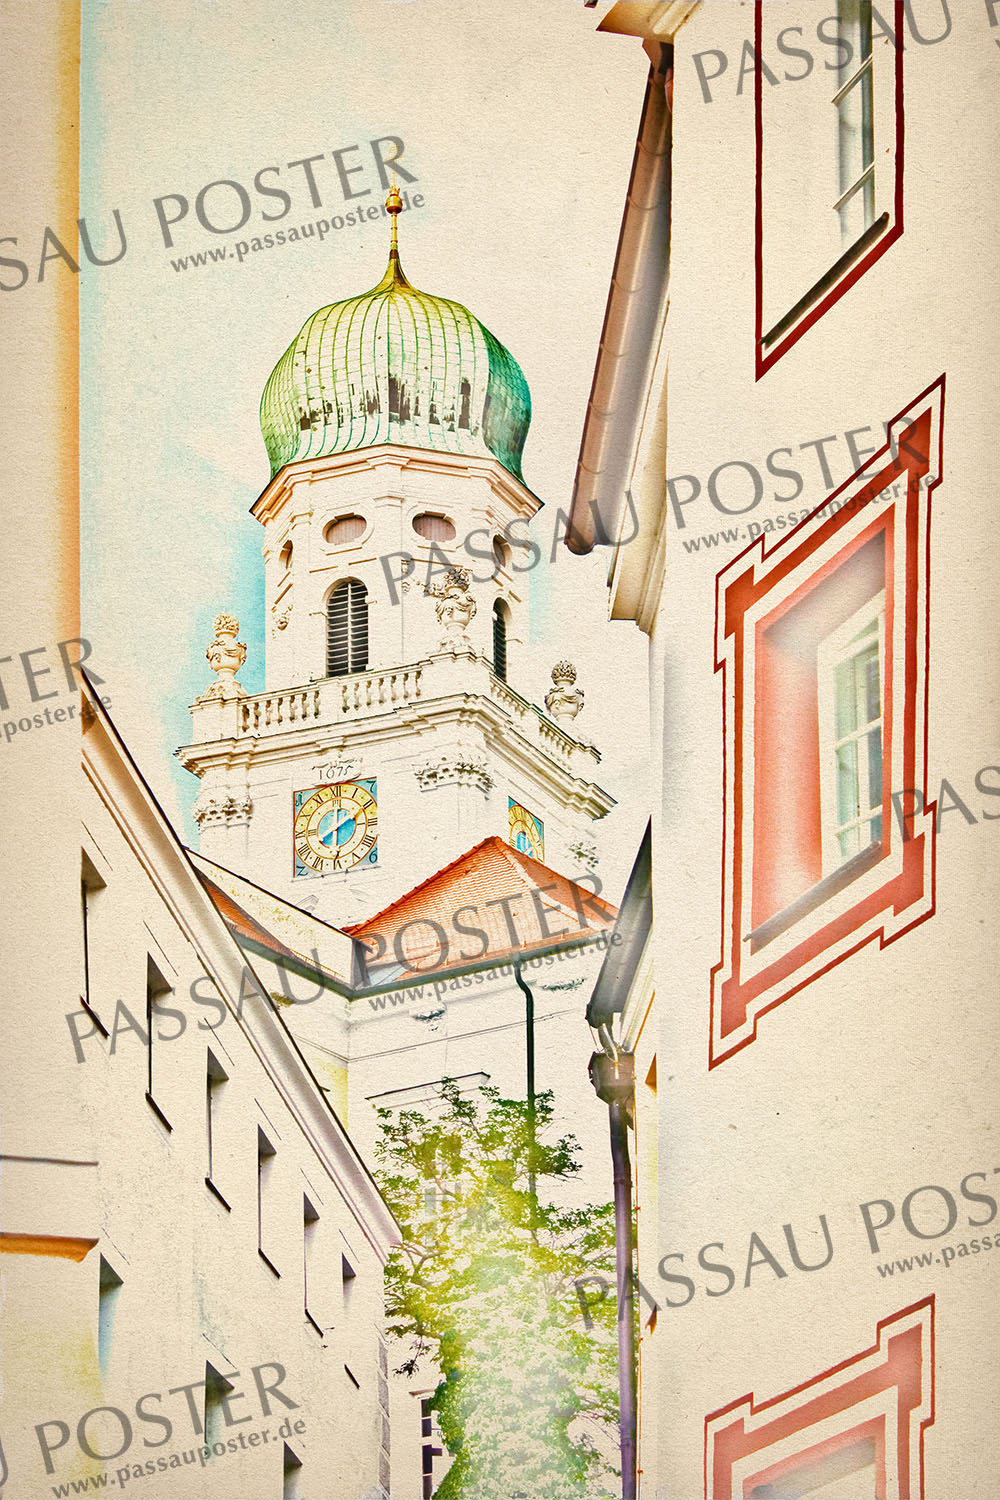 Passau Poster - Passauer Herz der Stadt